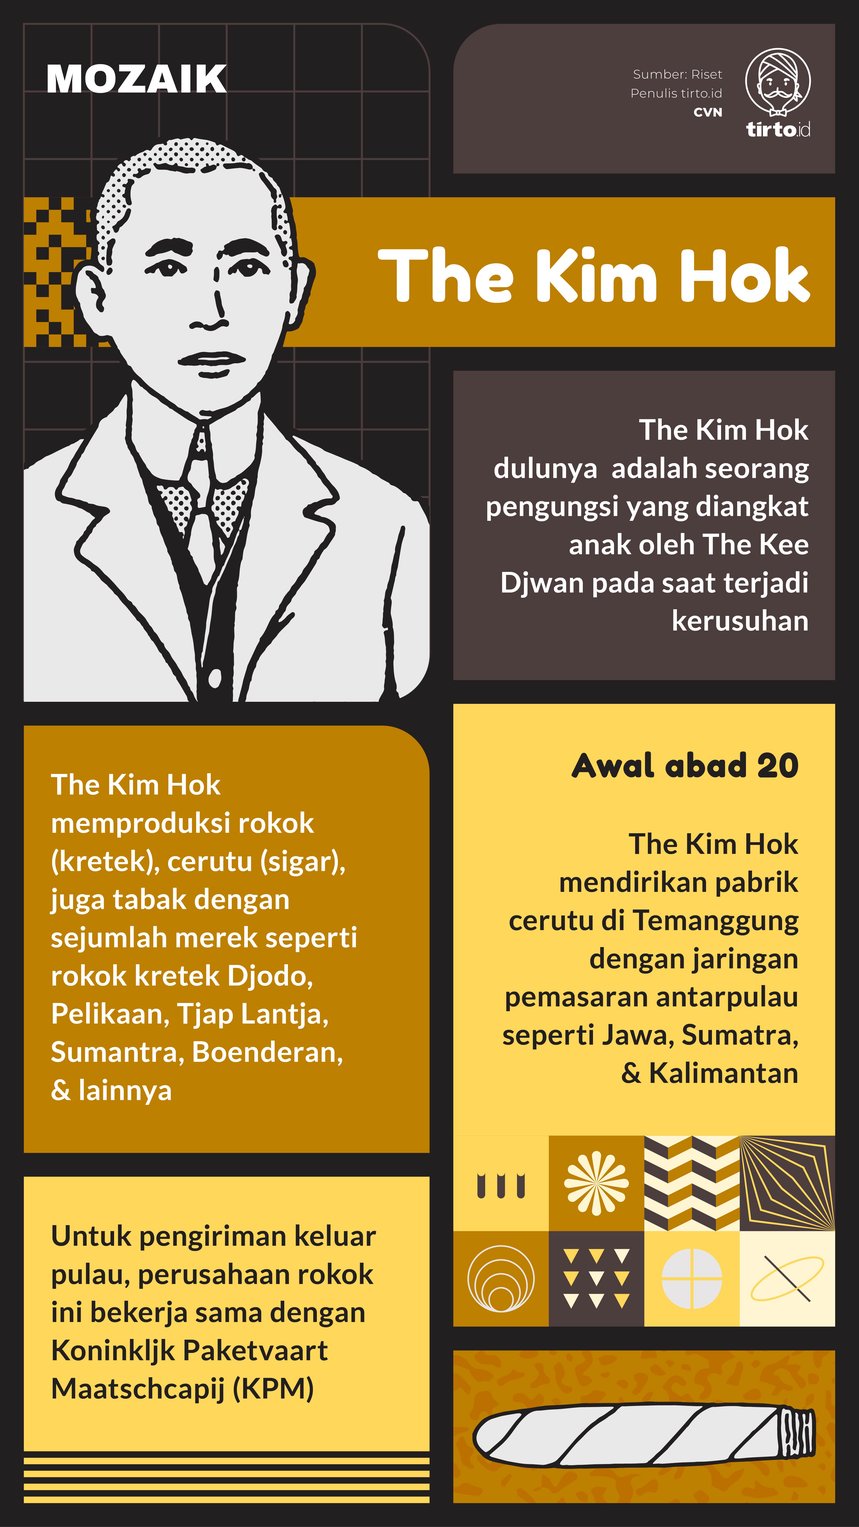 Infografik Mozaik The Kim Hok